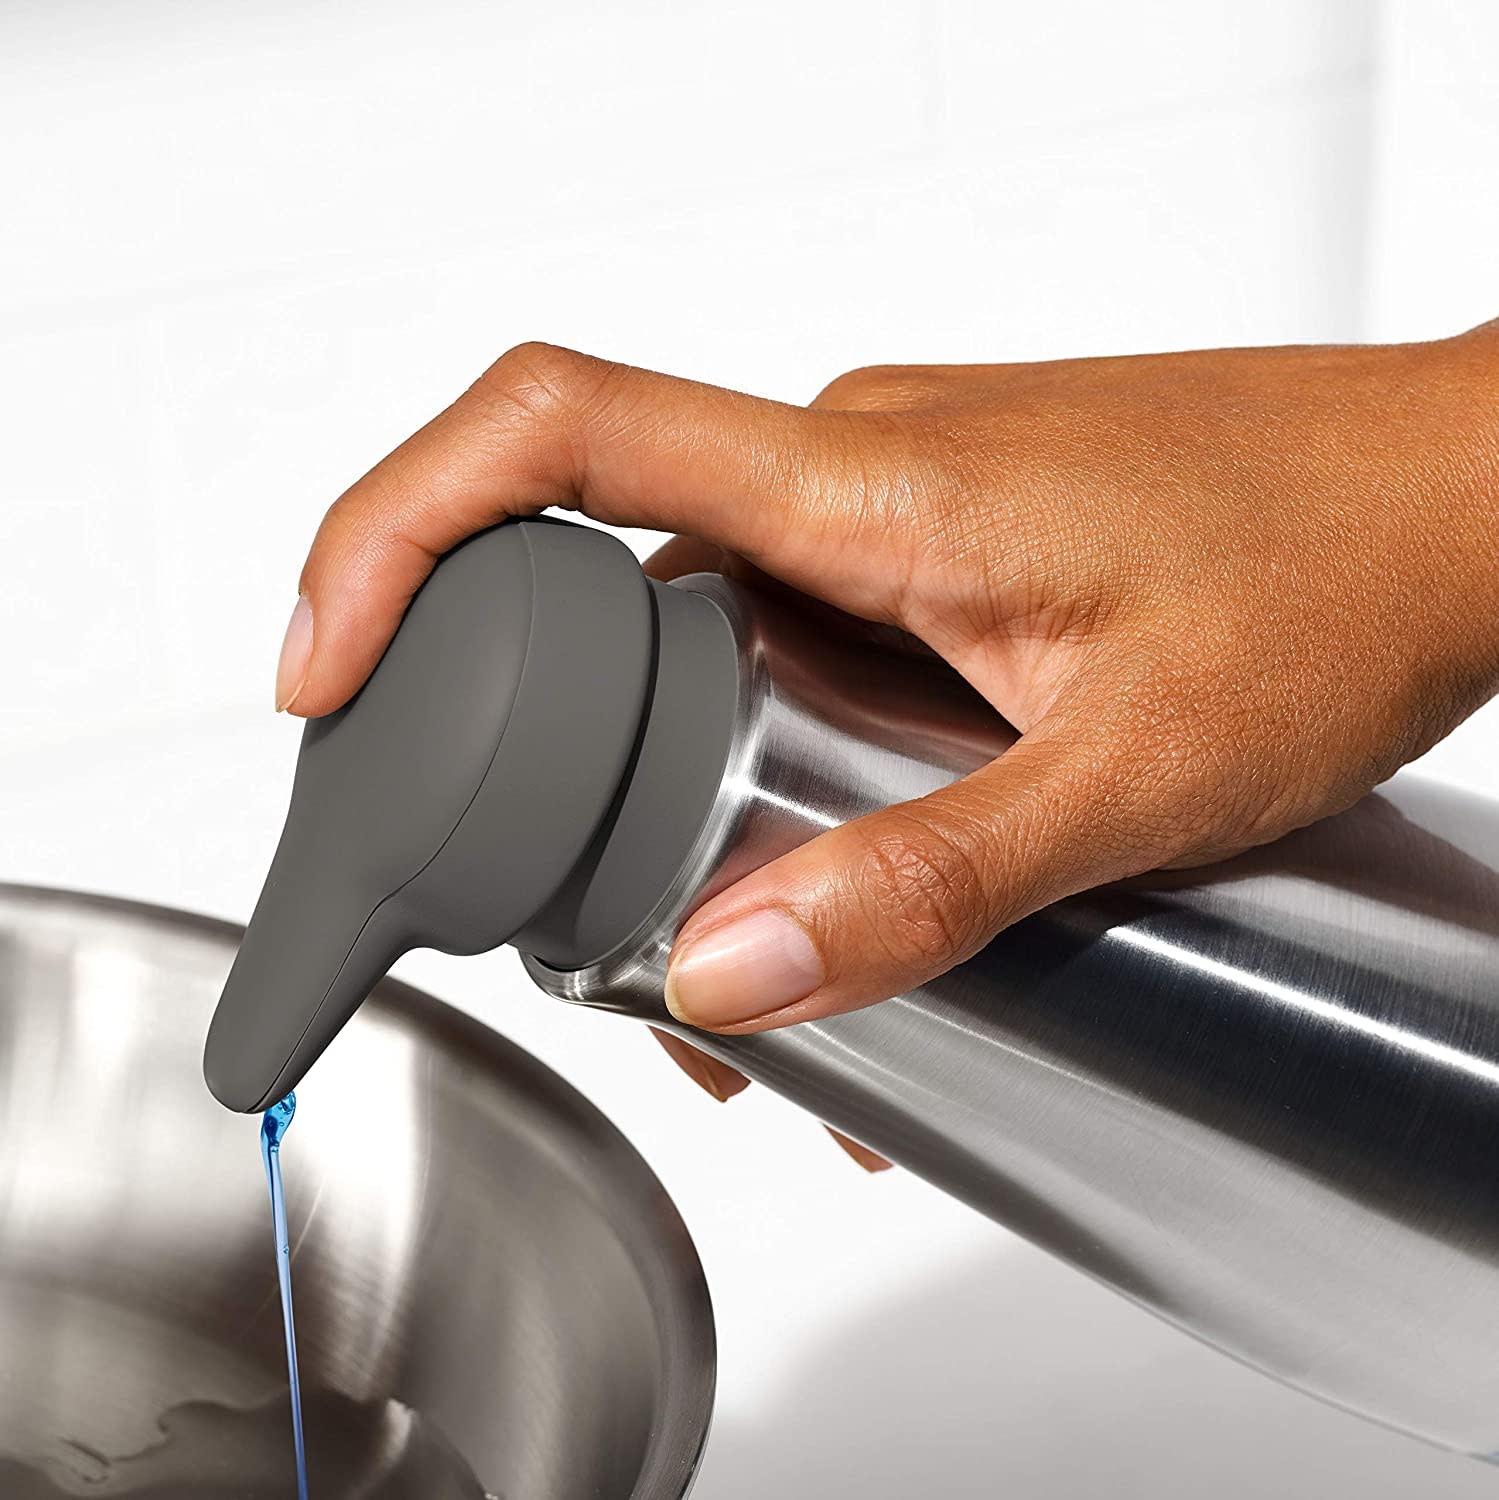 OXO Good Grips Stainless Steel Soap Dispenser 